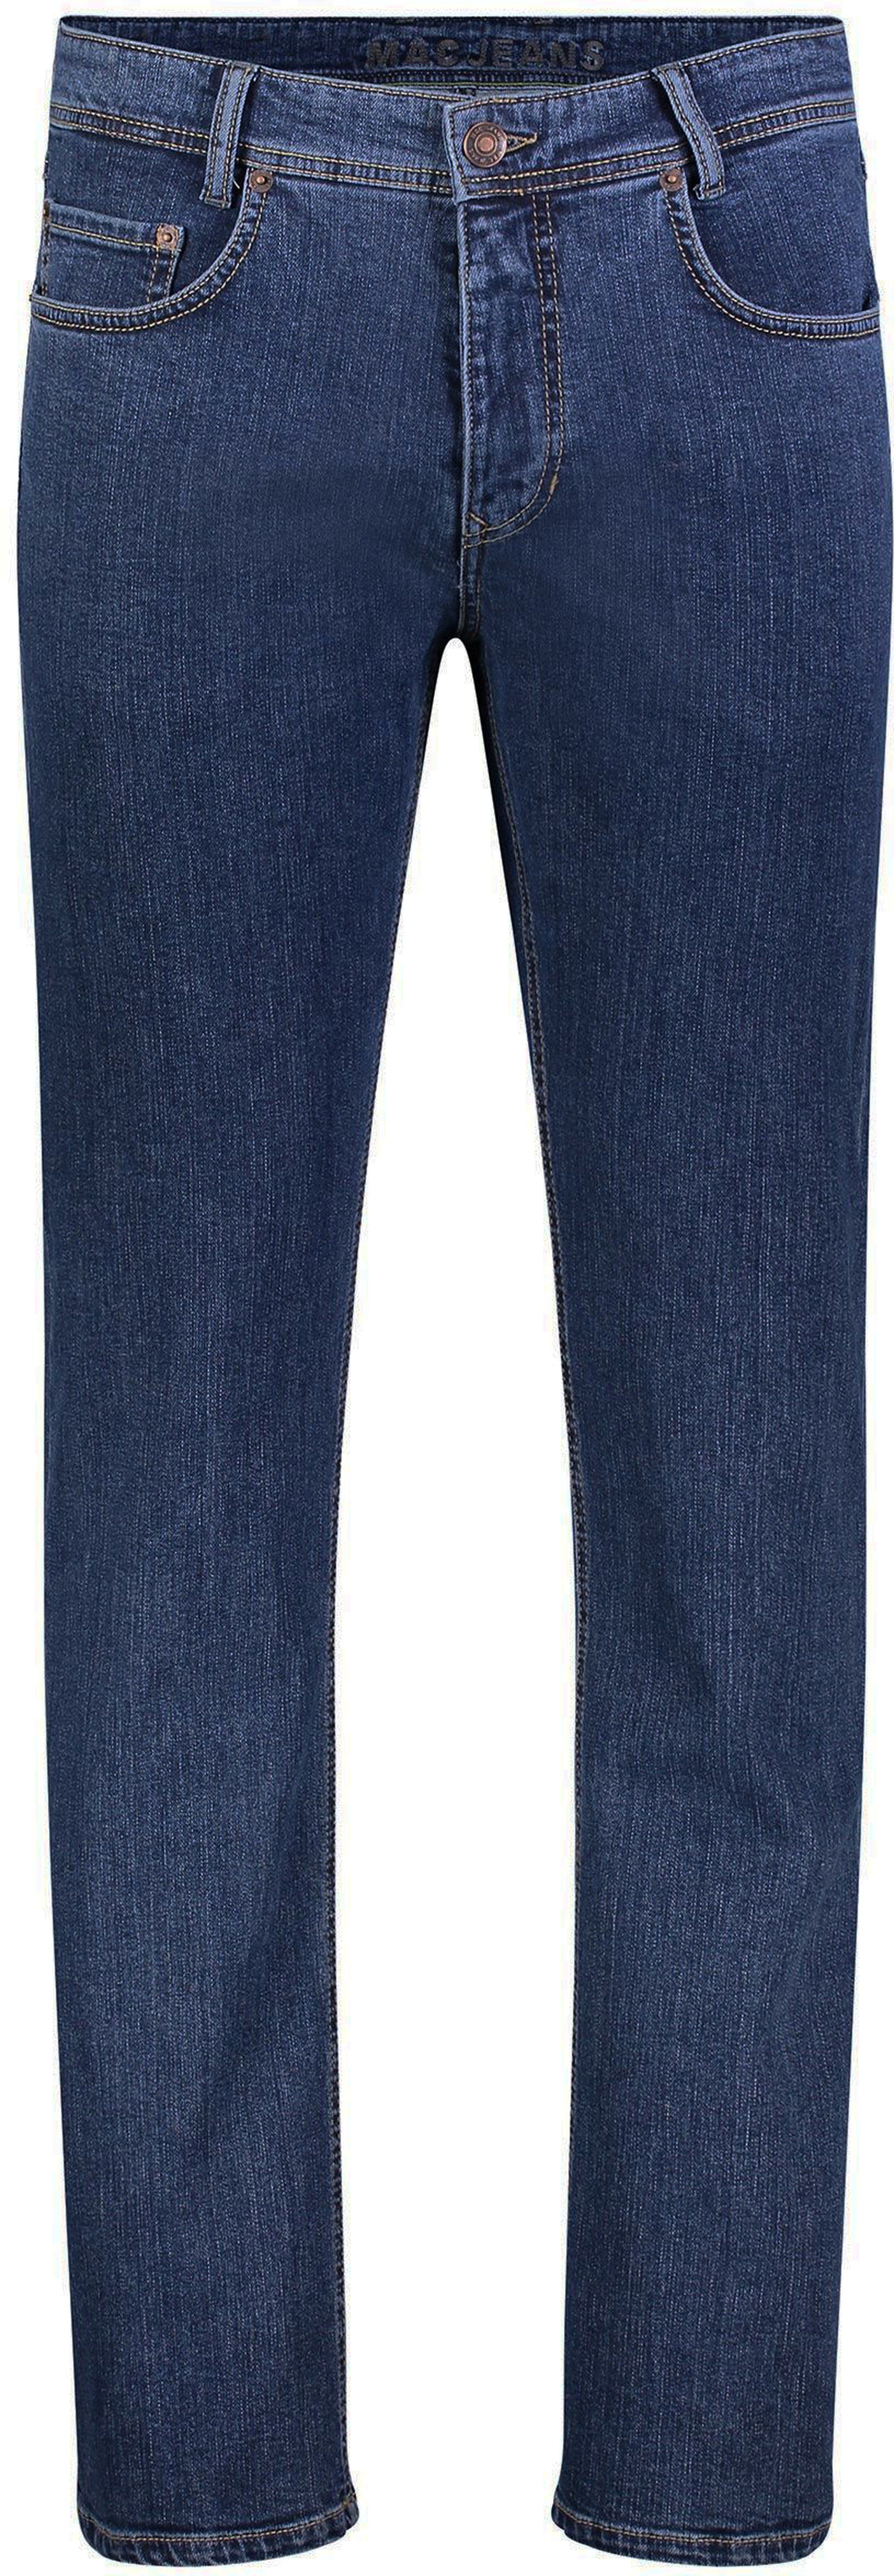 Mac Arne Jeans Light Used Blue size W 30